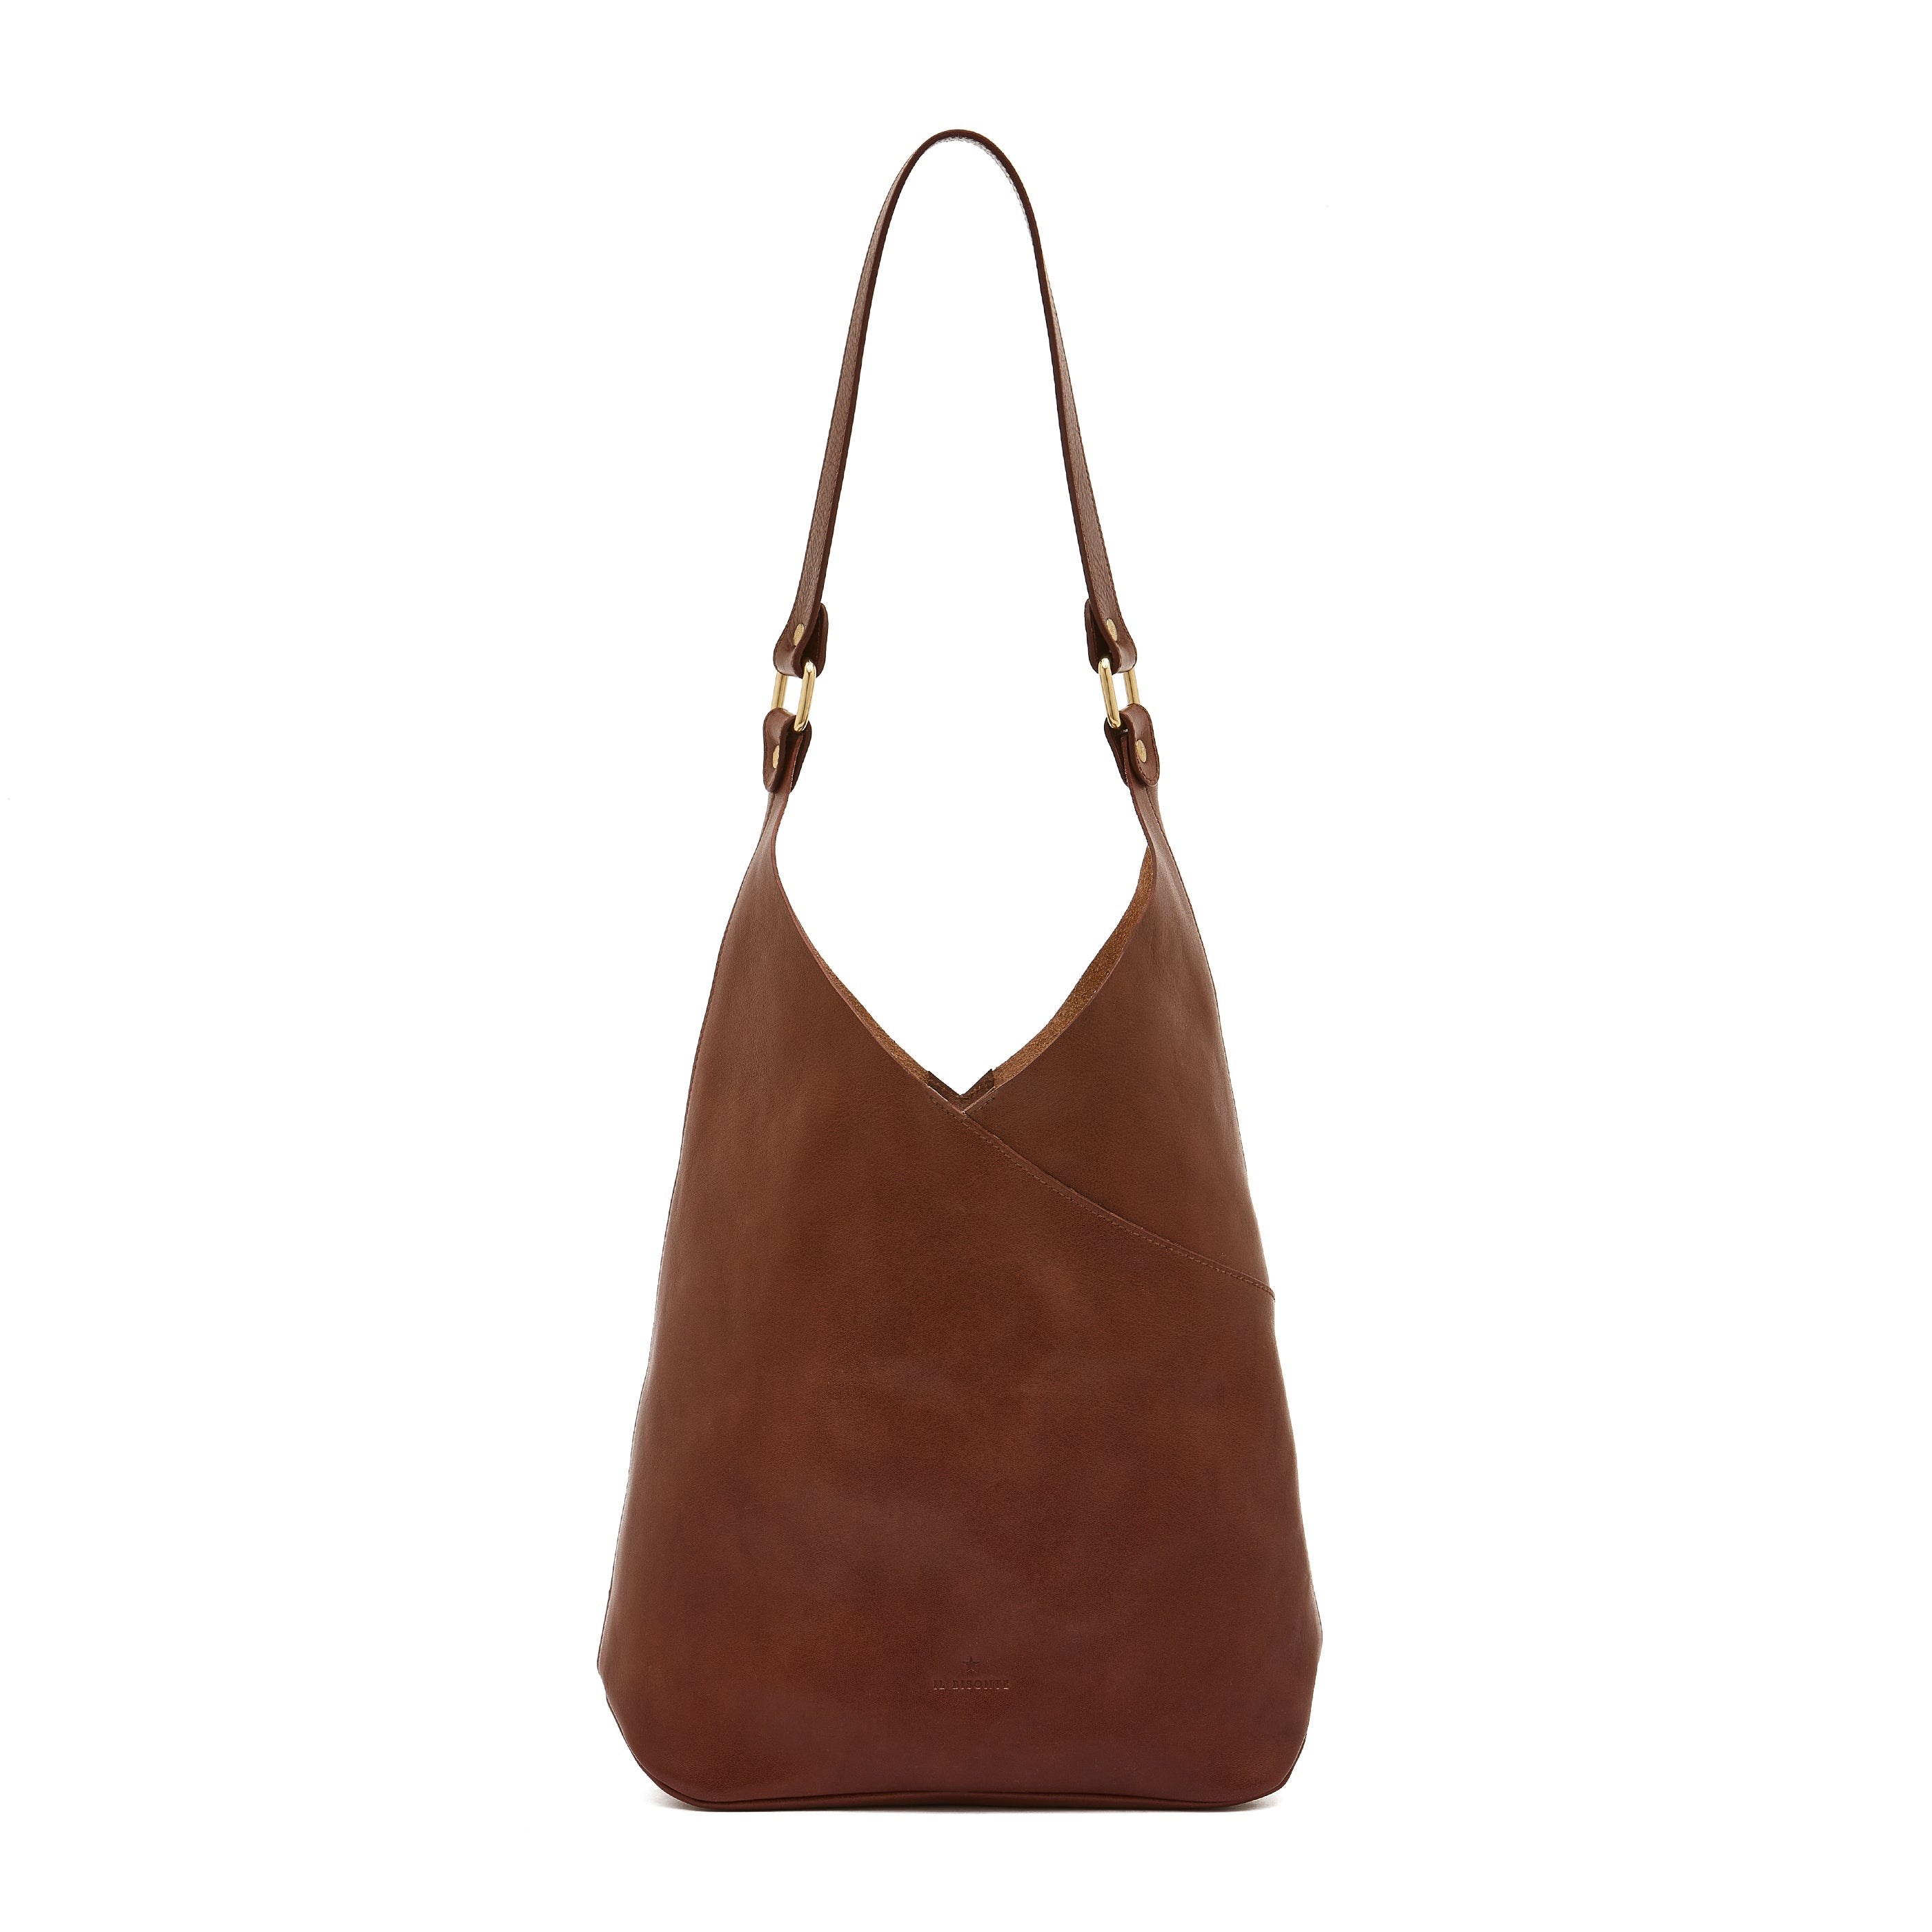 Malibu | Women's shoulder bag in leather color arabica